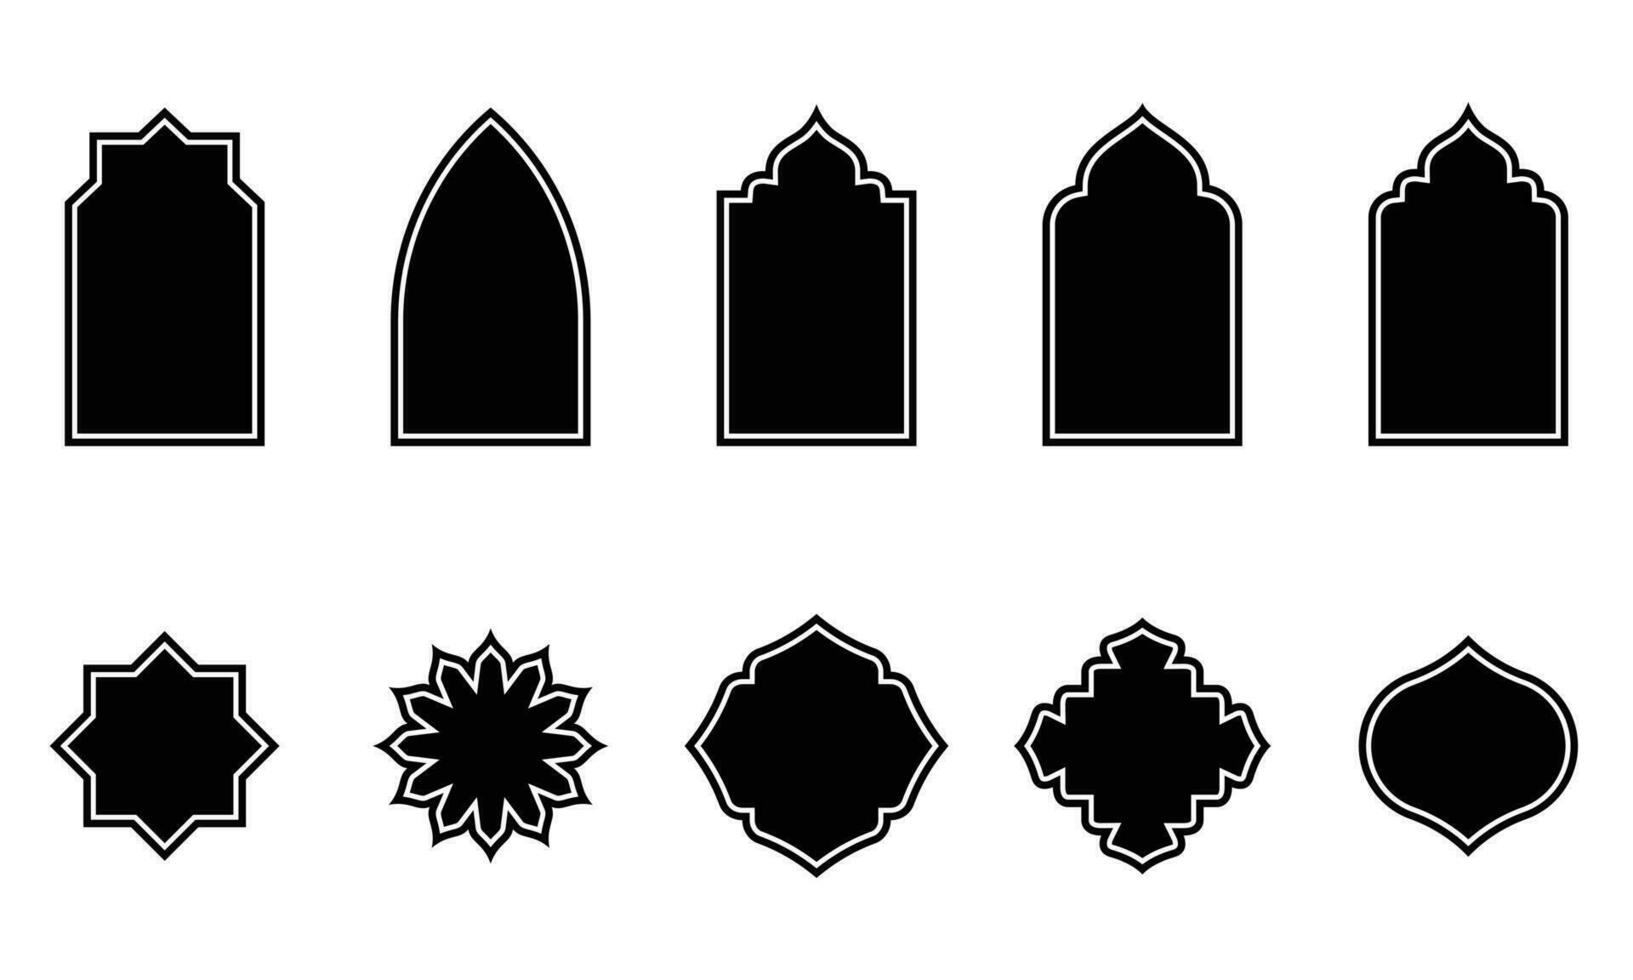 conjunto de islámico forma ilustración. plano islámico puerta y Arábica ventana forma ilustración. musulmán oriental formas diseño para Ramadán. bueno para islámico diseño, etiqueta, firmar, pegatina vector